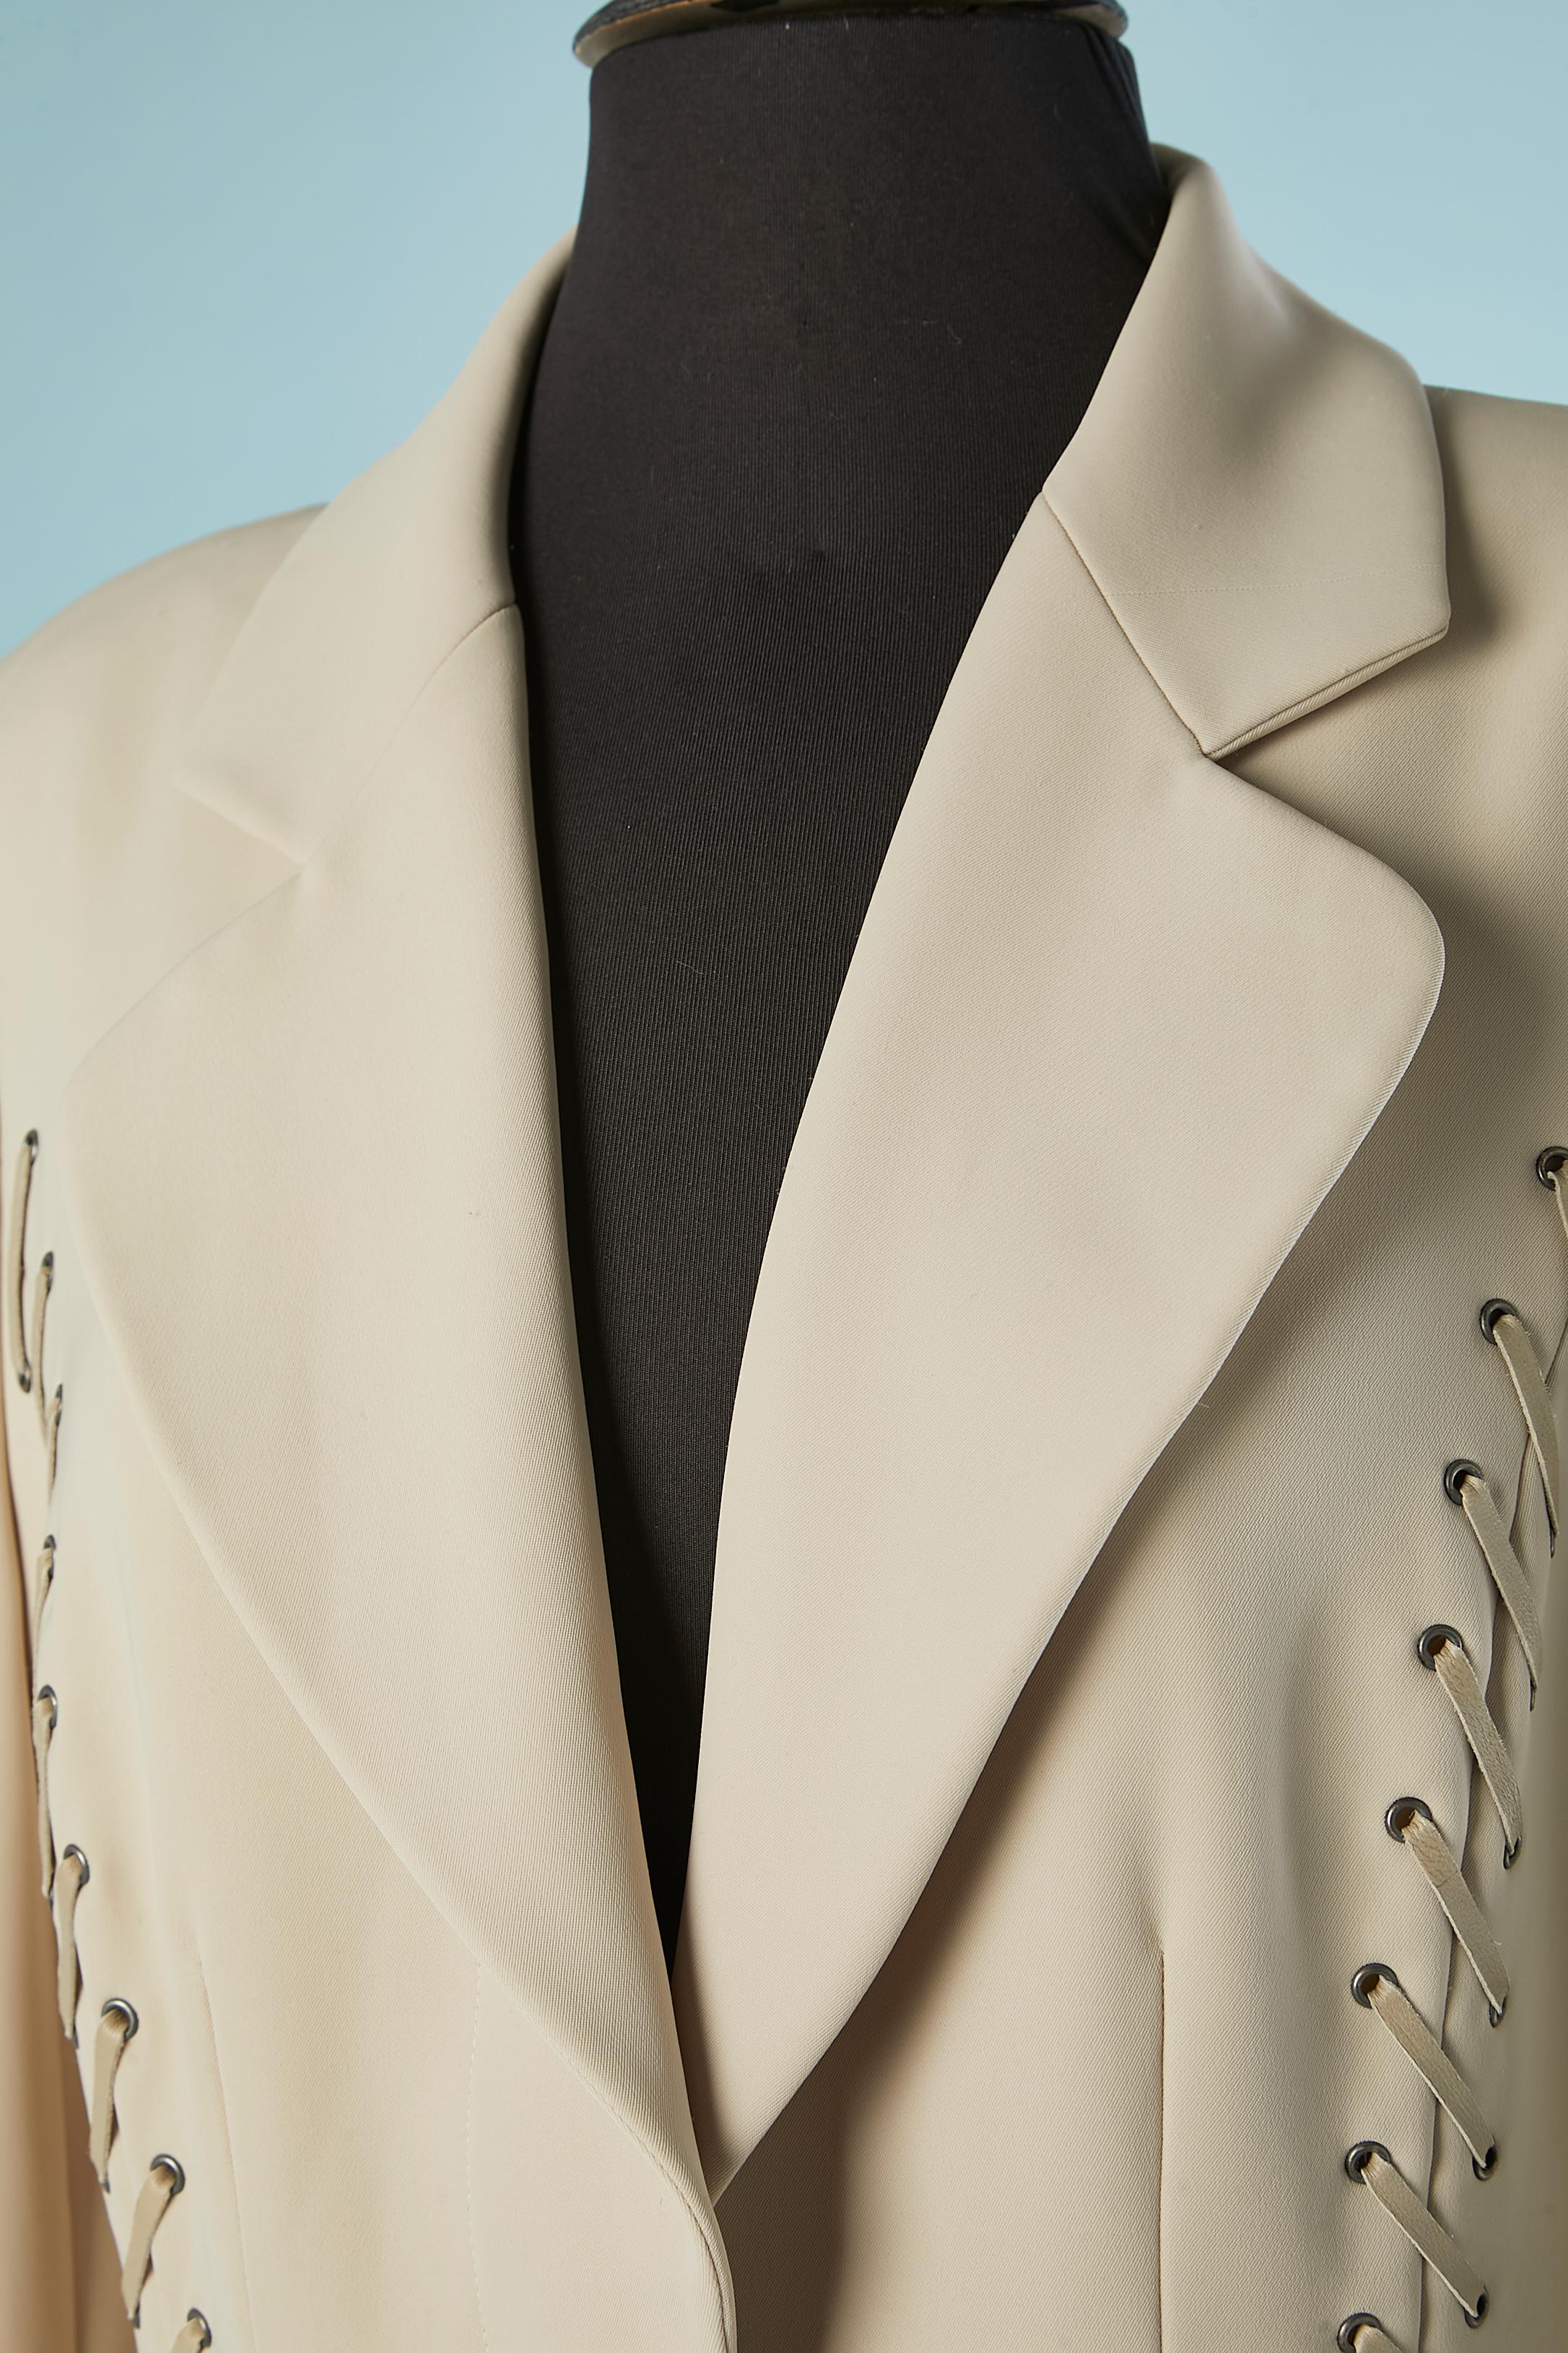 Manteau gris avec des rubans de cuir gris lacés devant et derrière.
Composition : tissu principal et doublure 100% polyester. 
3 poches sur le devant. 2 fentes dans le dos sur le côté. Épaulettes. 2 boutons au milieu du devant pour fermer le manteau